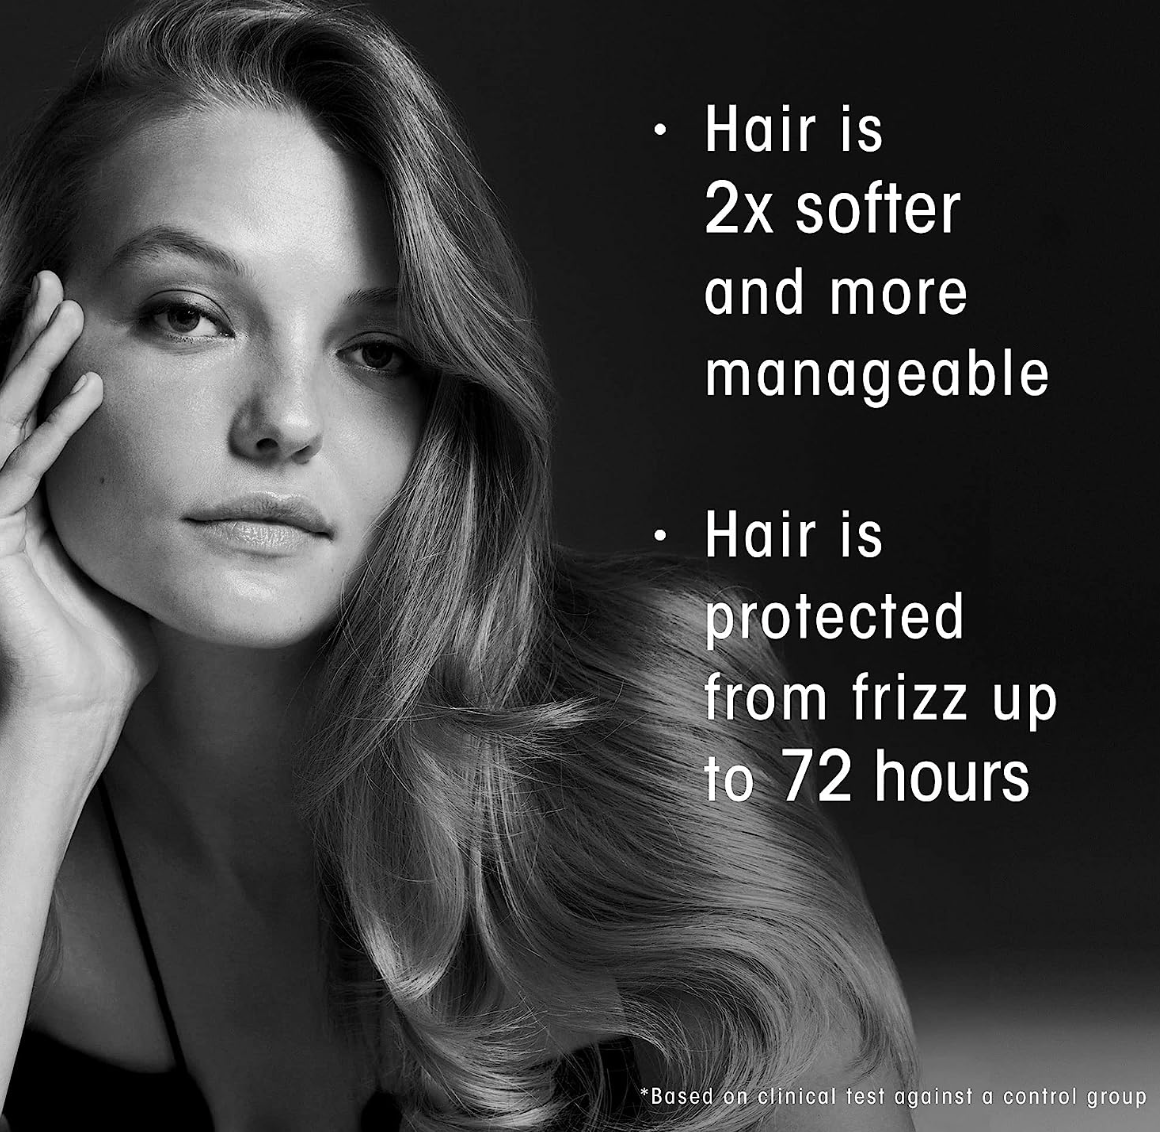 Oribe Gold Lust Nourishing Hair Oil 1.7FL